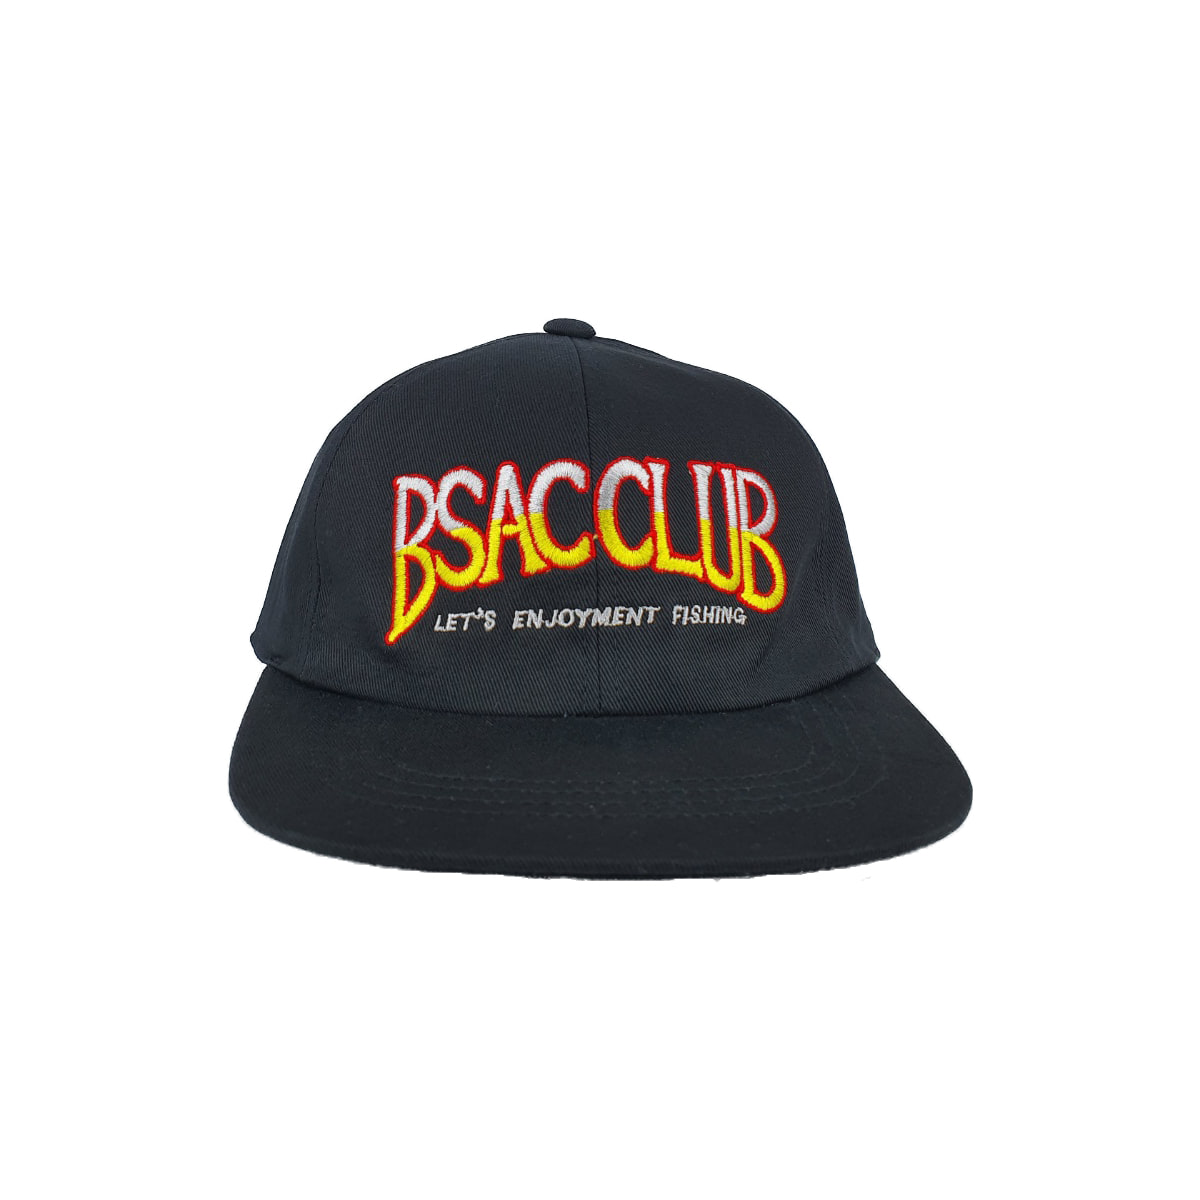 BSAC CLUB CAP